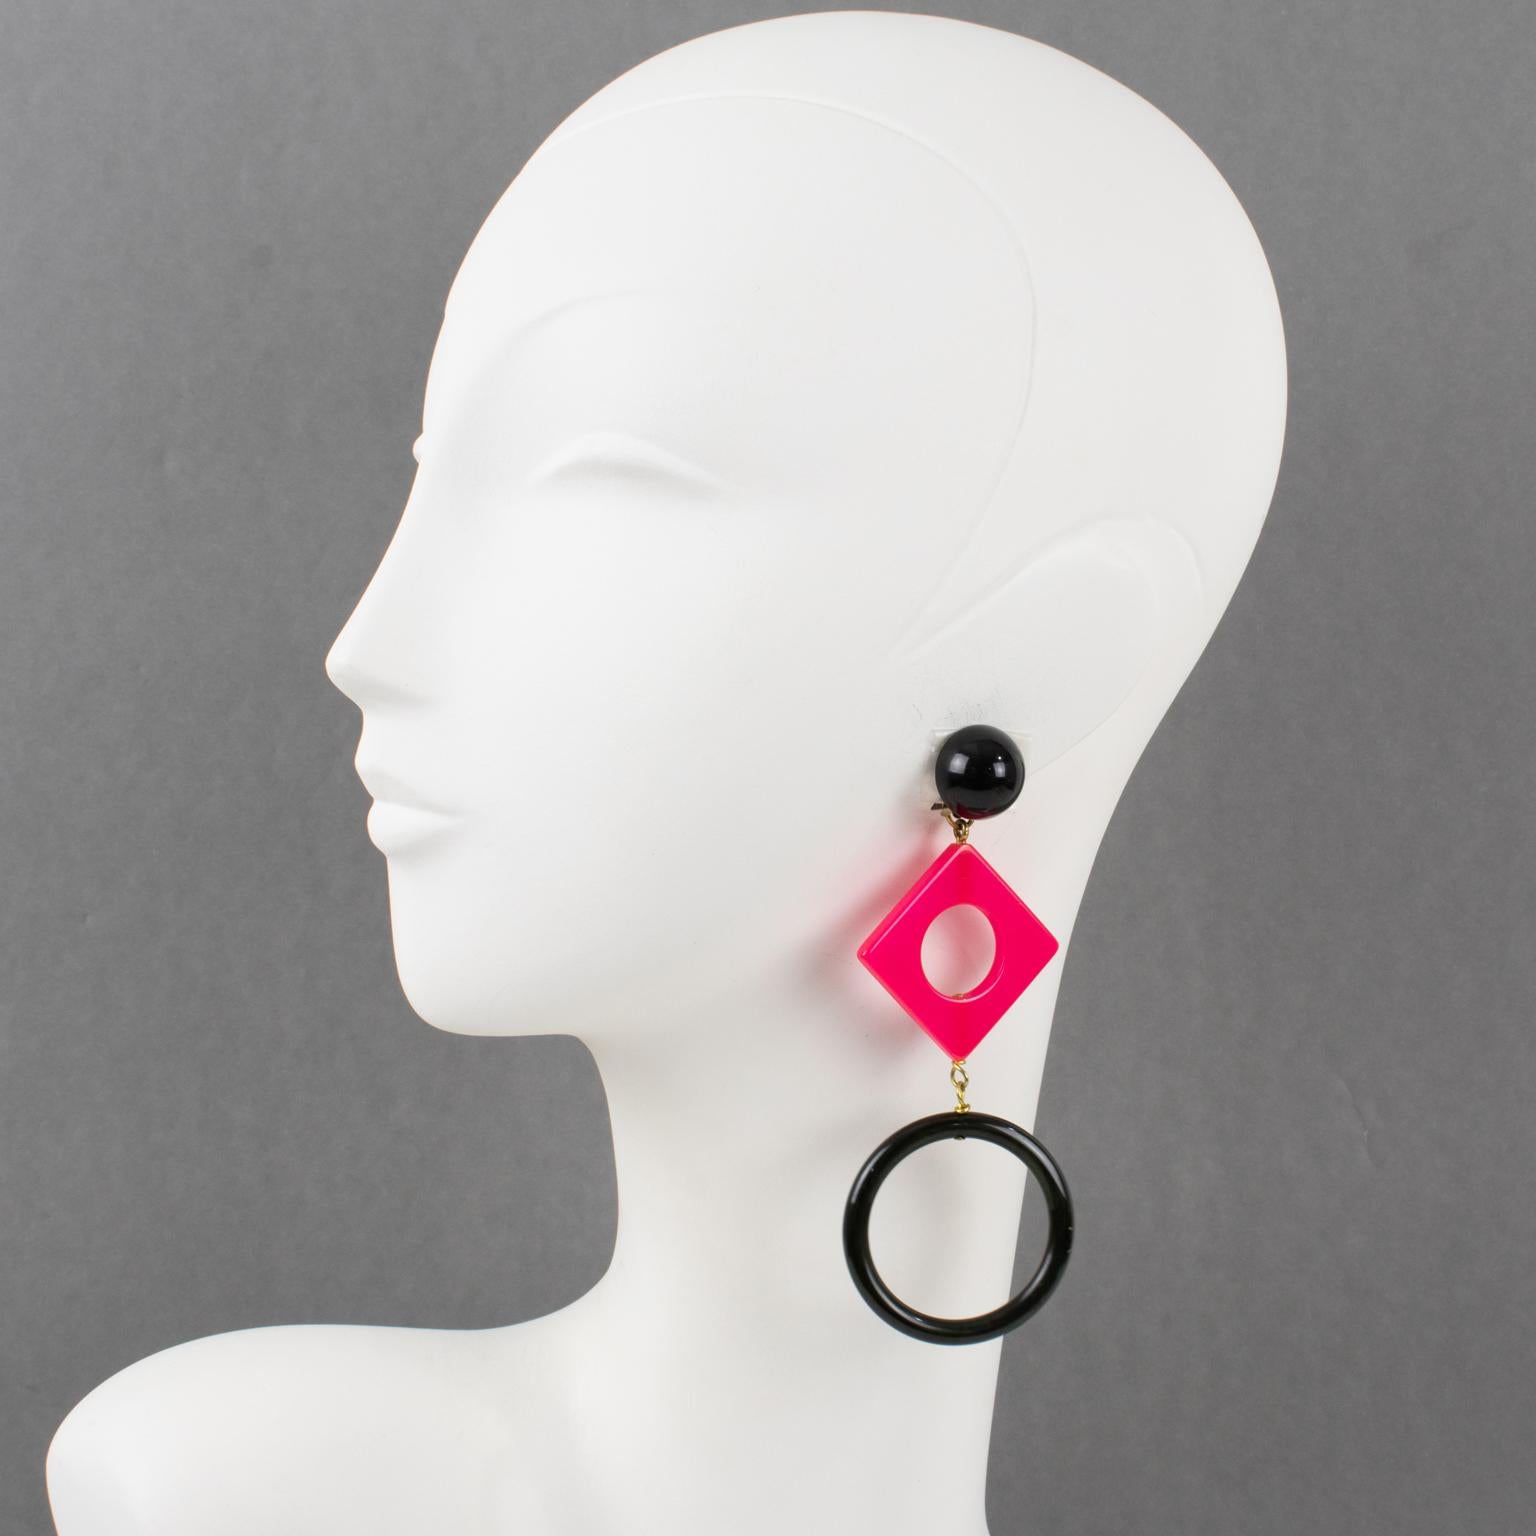 Diese hübschen, extralangen Bakelit-Ohrringe im Pop-Art-Stil haben eine Schulter-Dusterform mit einem geometrischen Design aus Quadrat- und Kreisformen. Trueing, schwarzes Lakritz, kontrastiert mit einem heißen Pink. Es gibt keine sichtbare